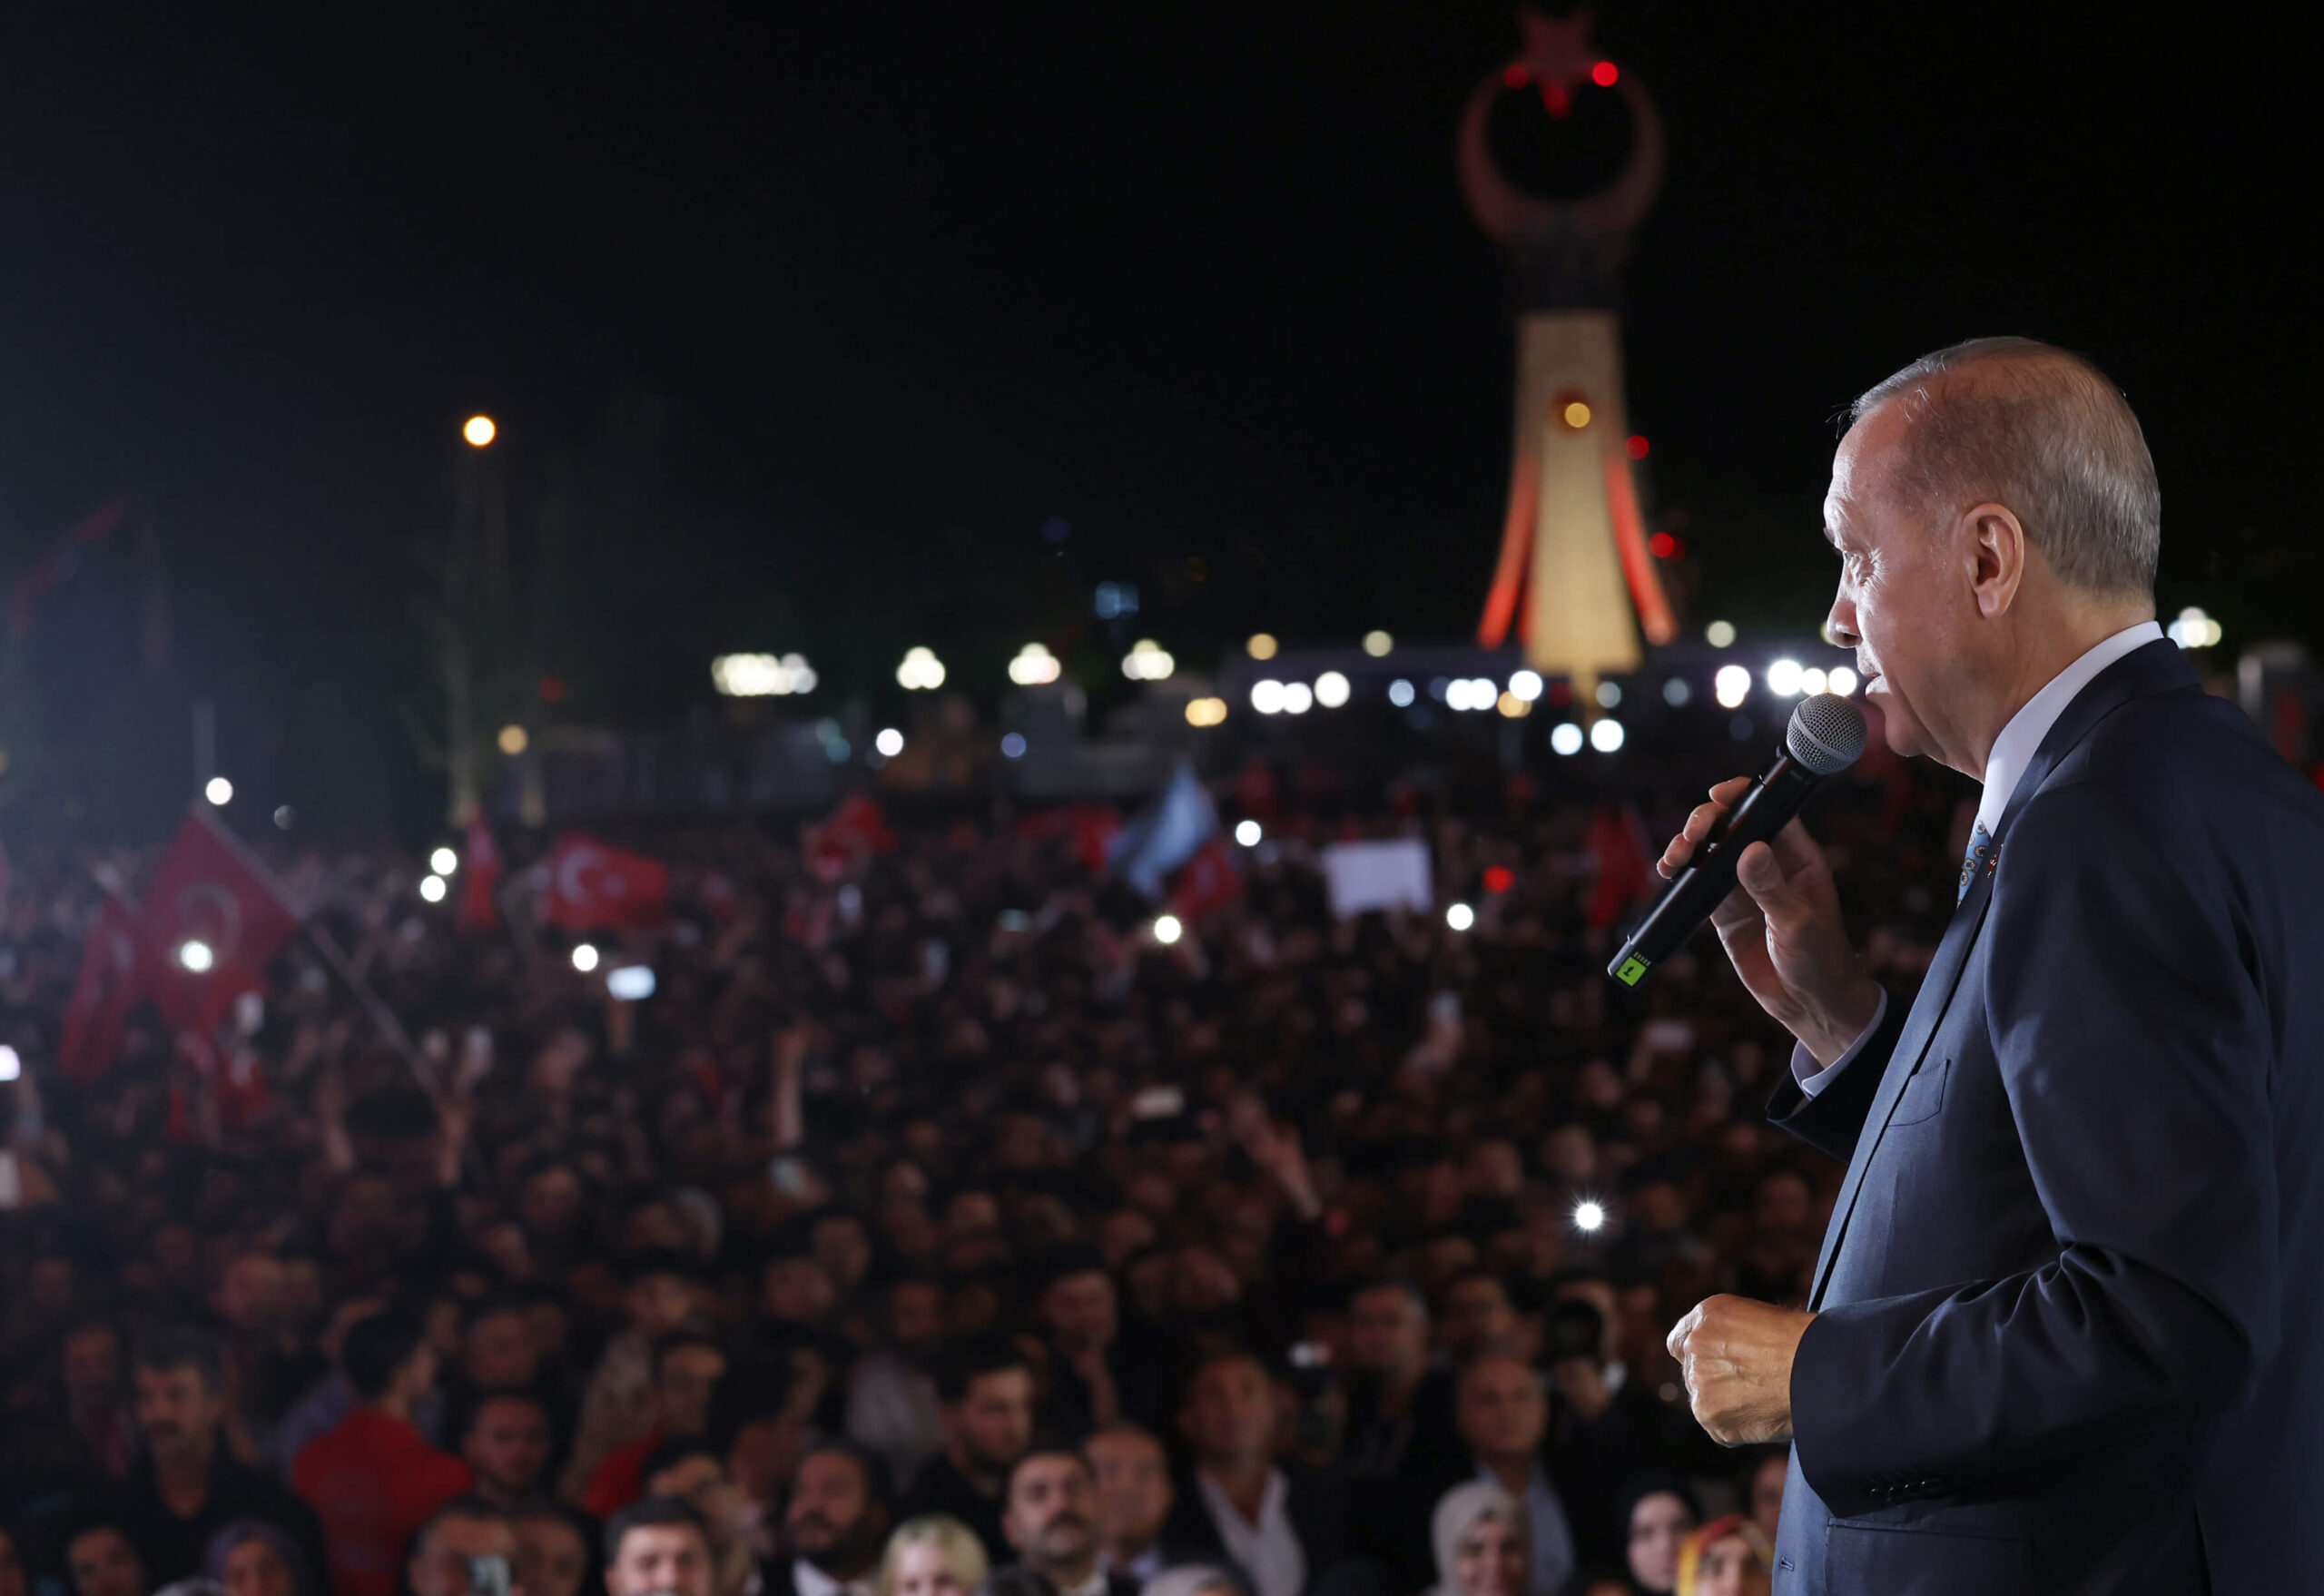 Türkiye Presidential Elections - Recep Tayyip Erdogan